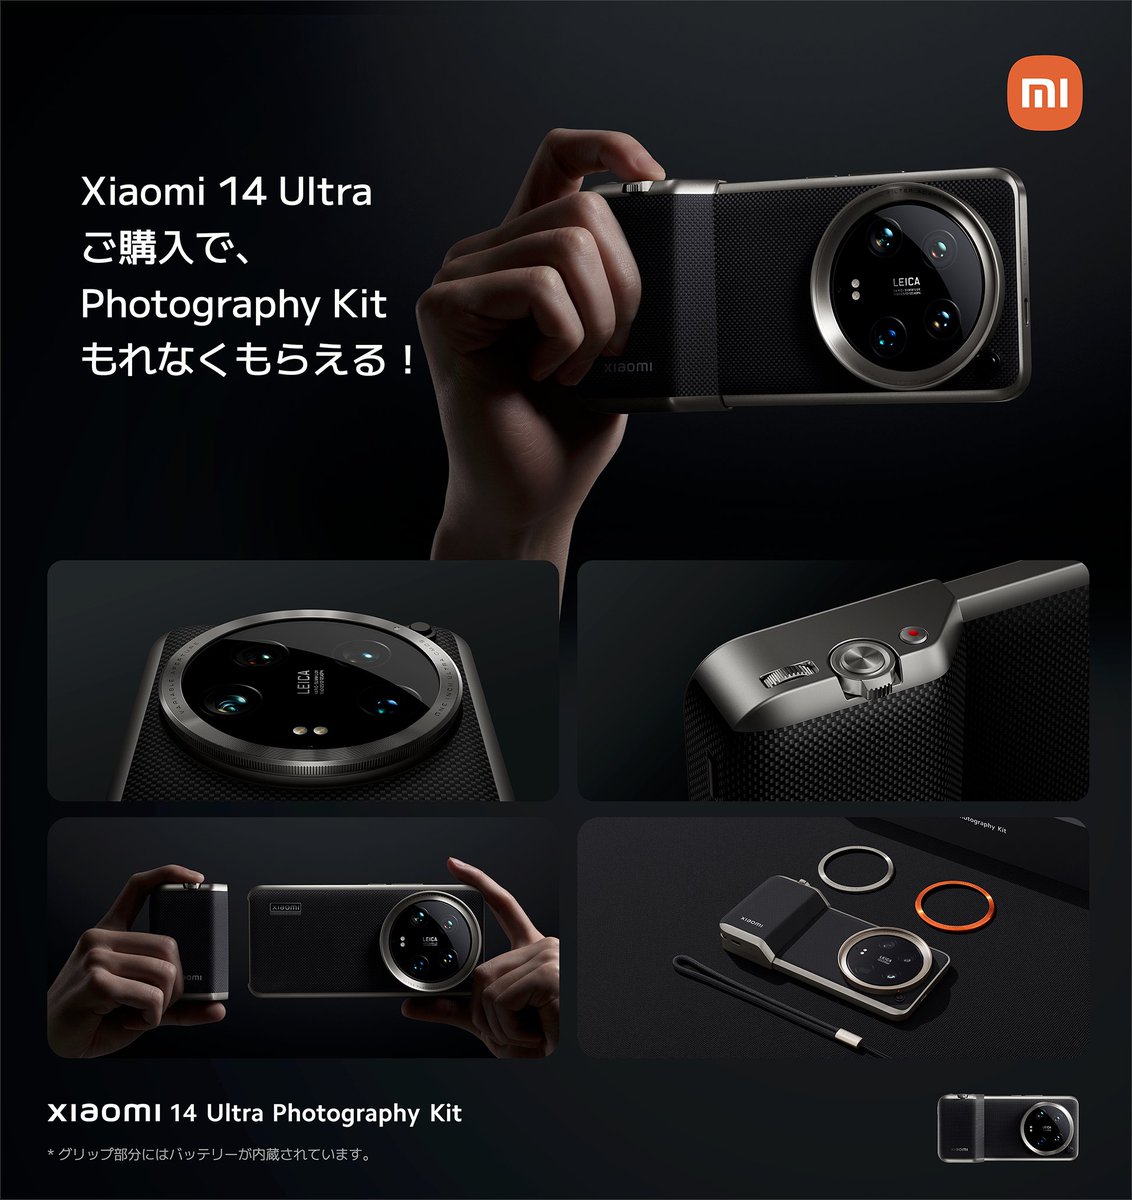 いよいよ明日からXiaomi 14 Ultraが発売となります。

大切なことなのでもう一度言いますが、
明日以降にご購入の方にもPhotography Kitは無料でついてきます。

皆様に愛される製品になることを、
社員一同心から願っております。
#これまでにない体験を

event.mi.com/jp/xiaomi-laun…